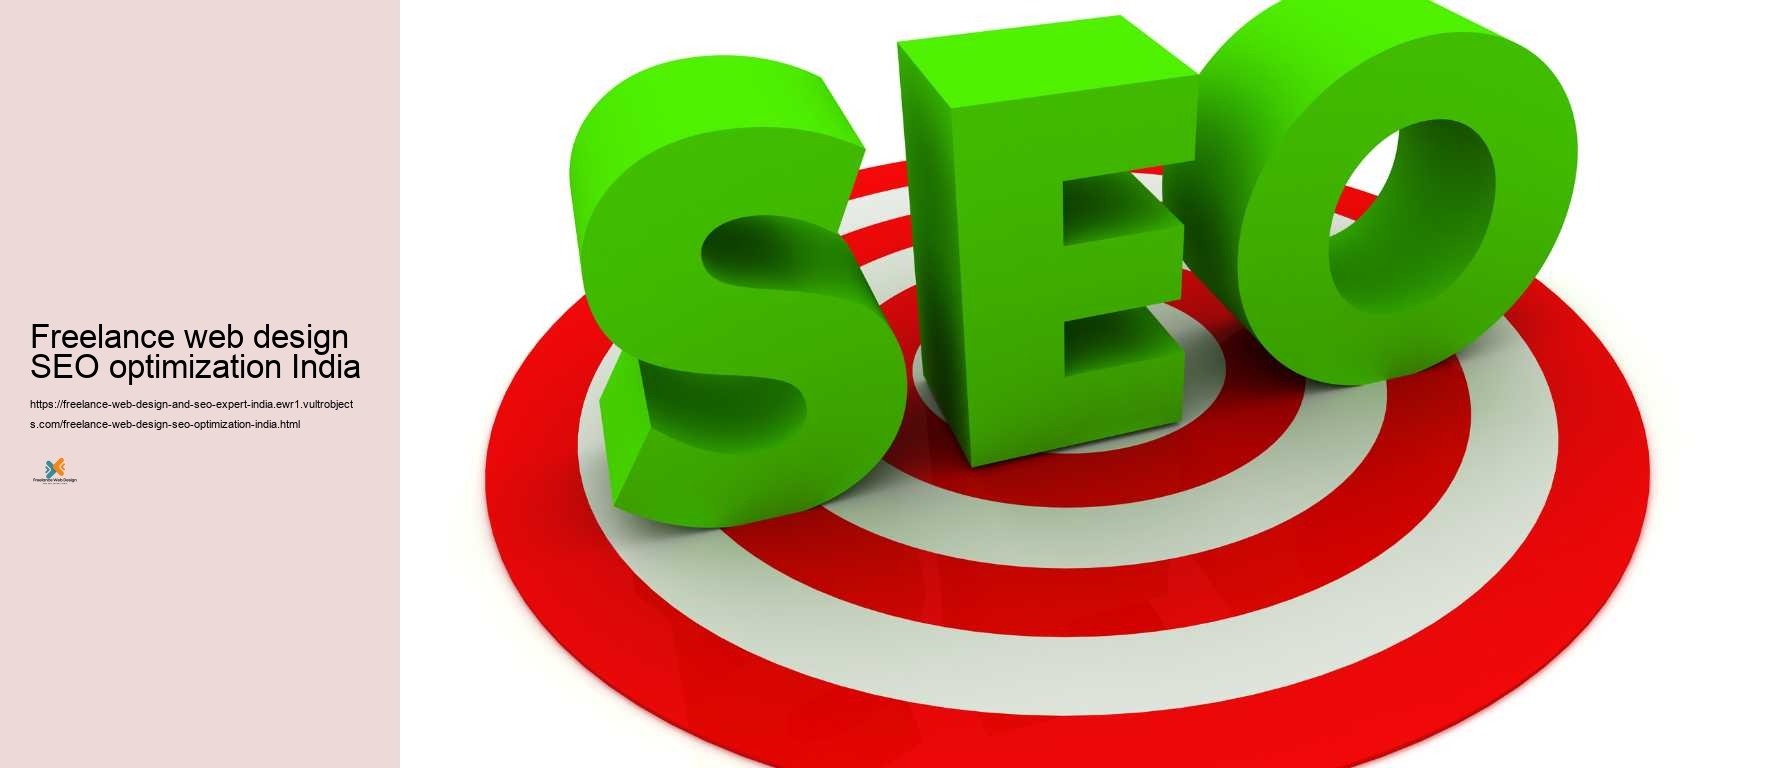 Freelance web design SEO optimization India